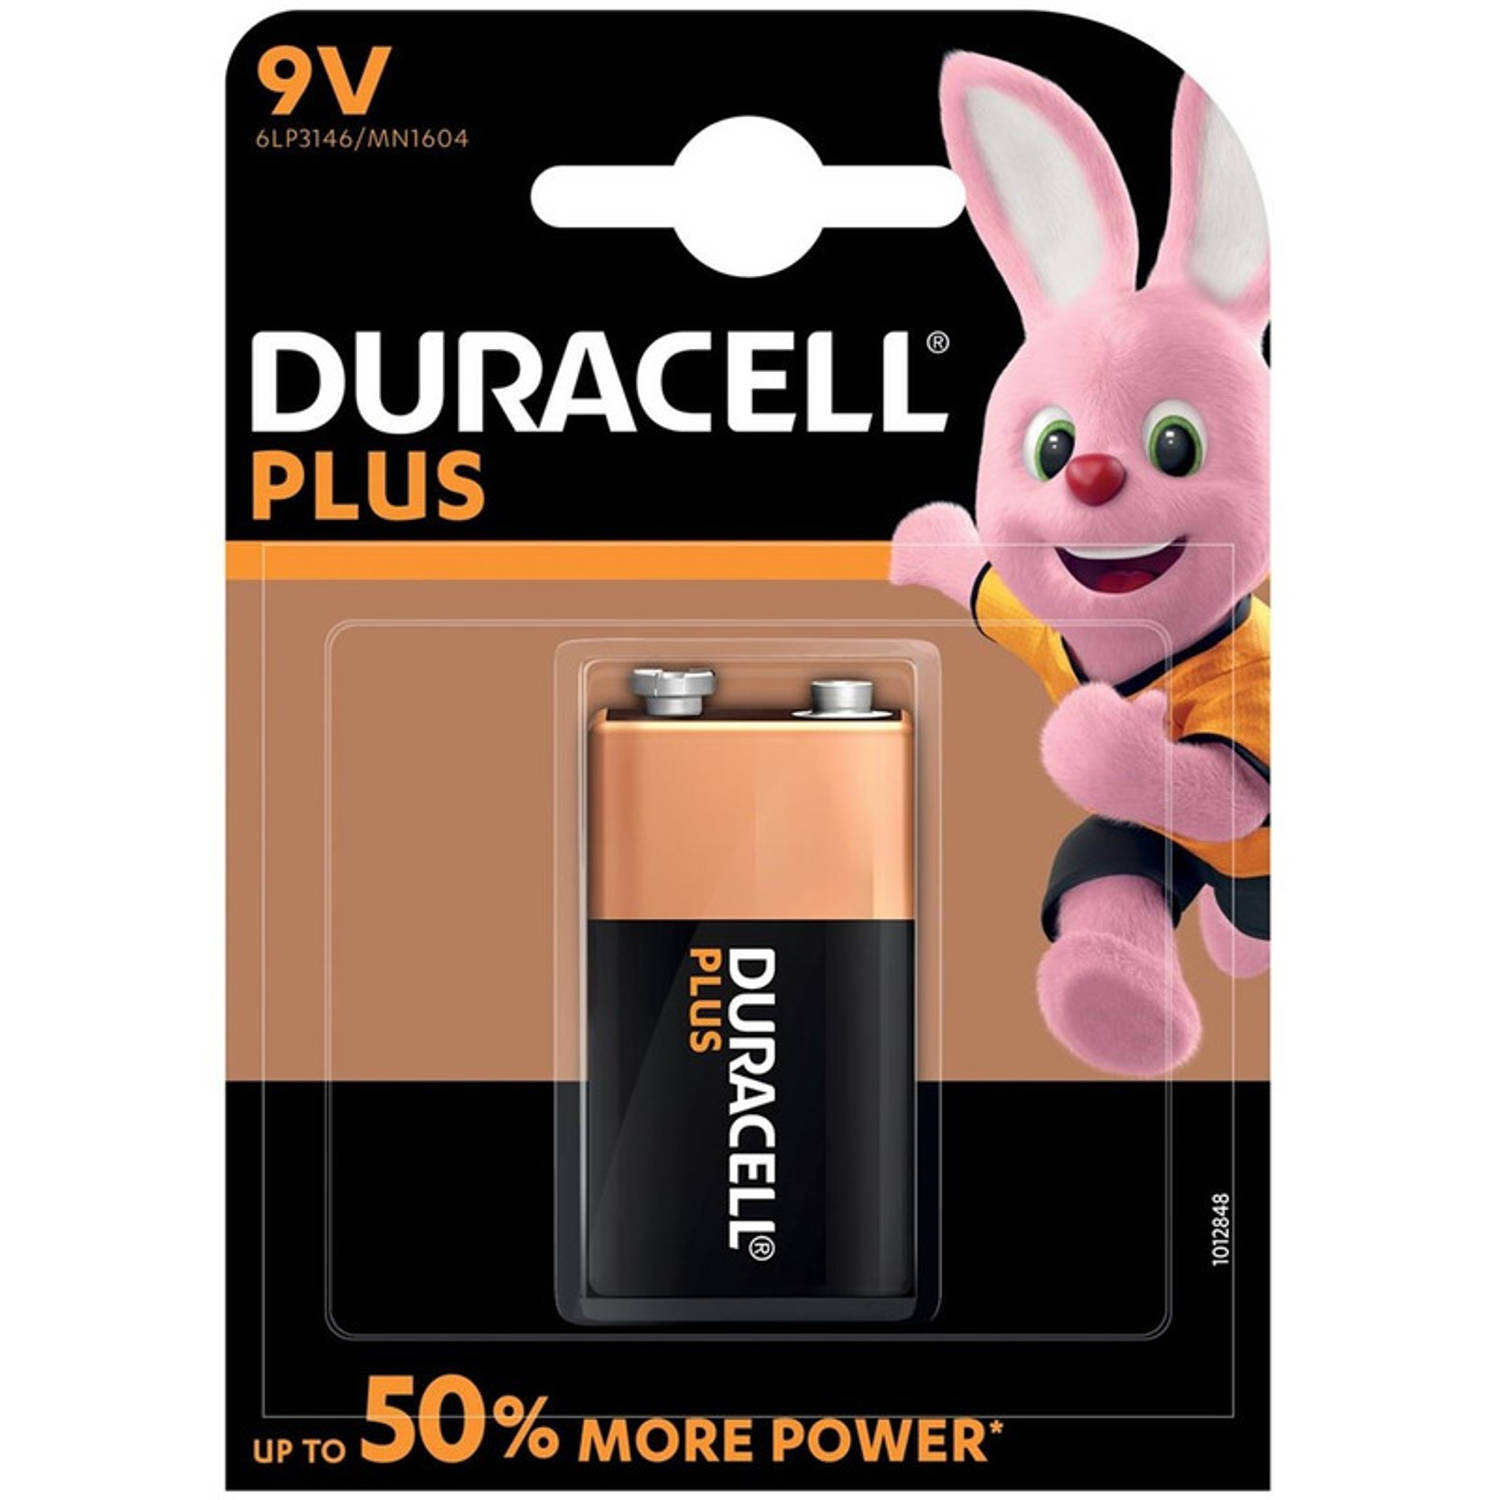 1x stuk Duracell V9 Plus batterij alkaline LR61 9 V - batterij 9v blok